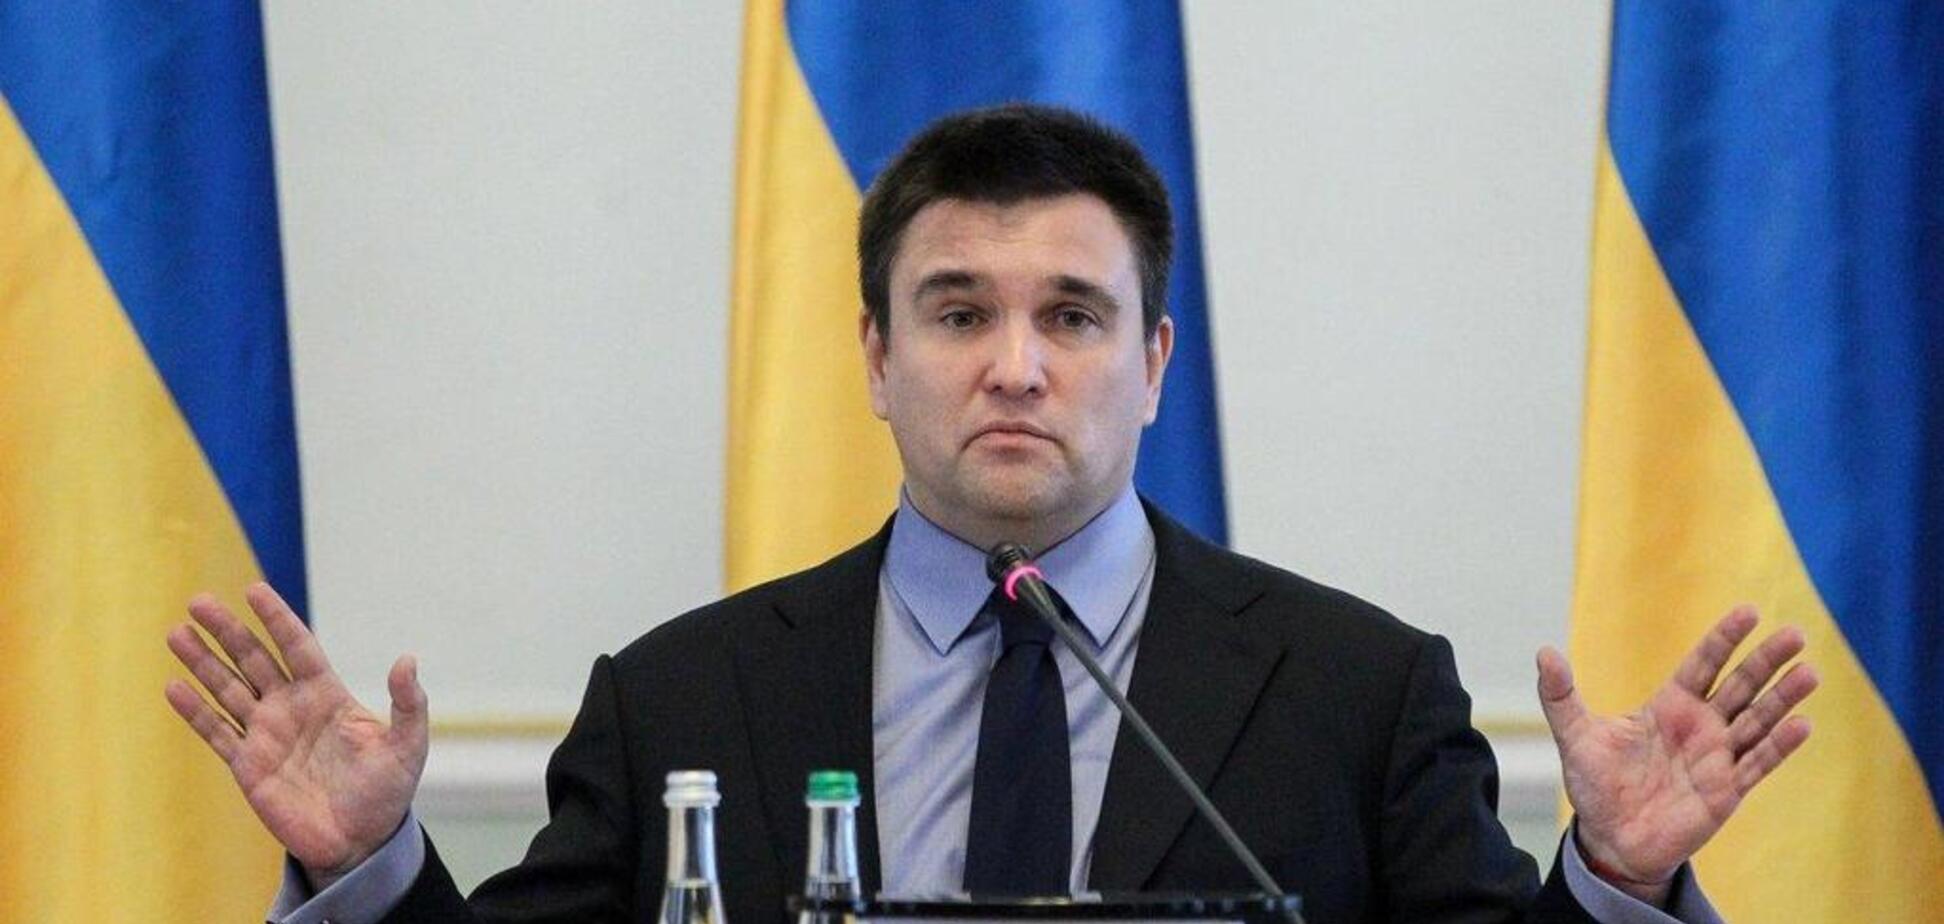 'Україну визнали за свою!' Клімкін виступив із прощальною промовою. Відео